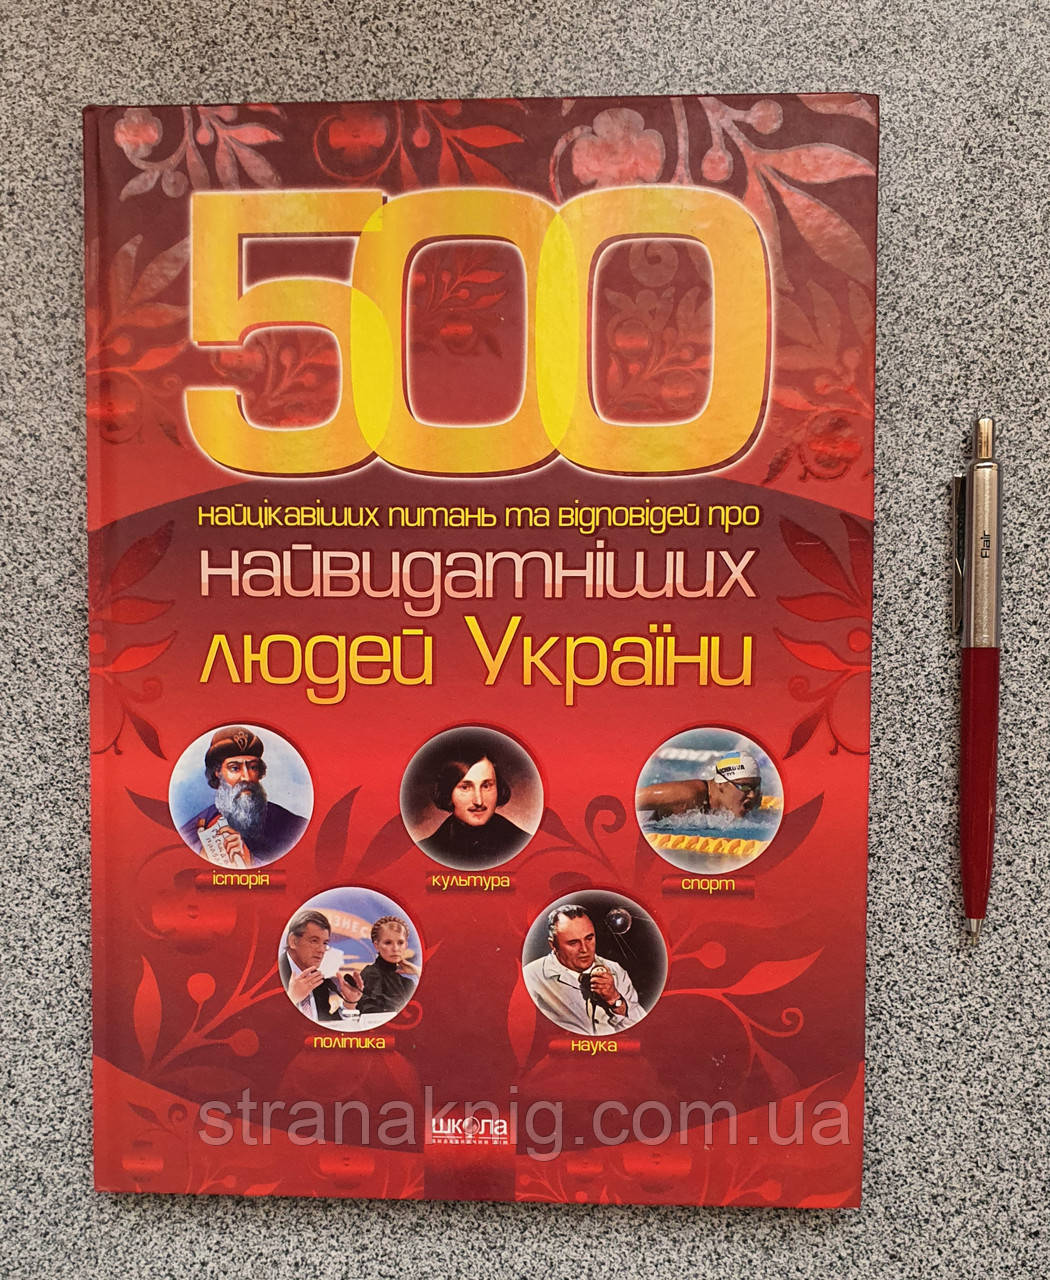 Книга 500 Найцікавіших питань та відповідей про найвидатніших людей України